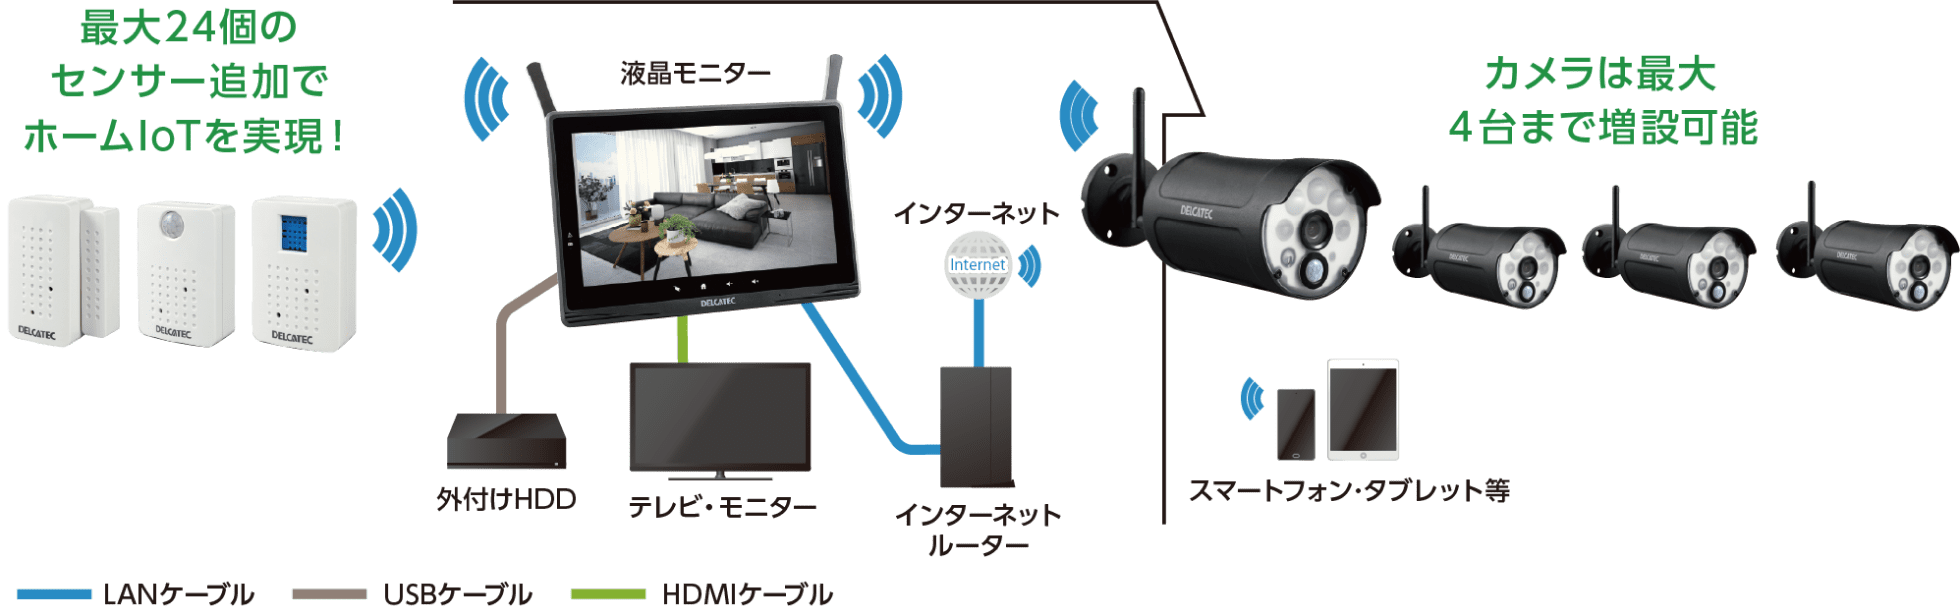 ワイヤレスフルHDカメラのシステム構成例